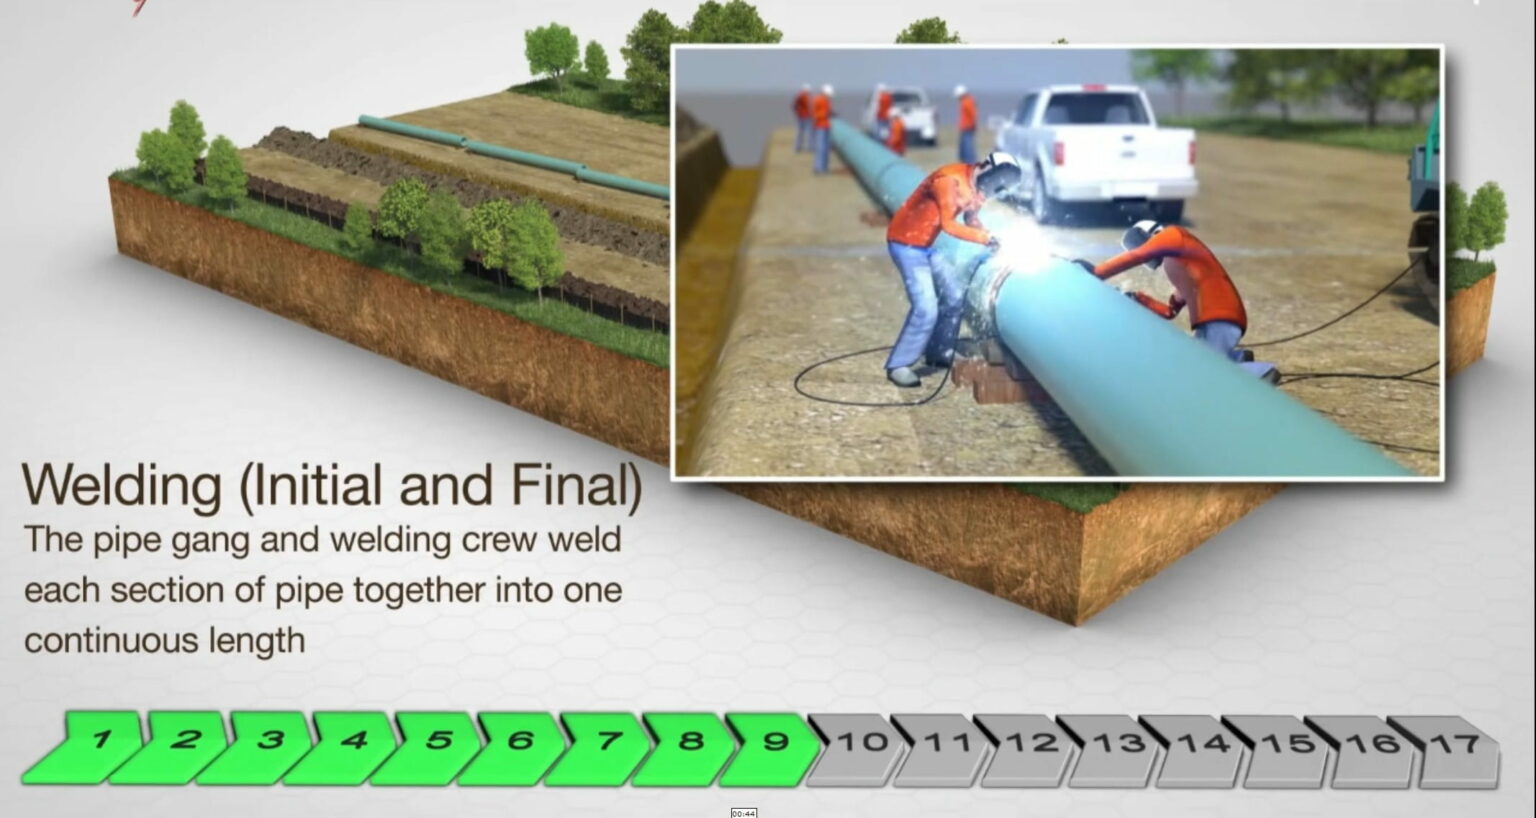 Infografía sobre el proceso paso a paso de instalación de tuberías enterradas, incluyendo excavación y enterramiento